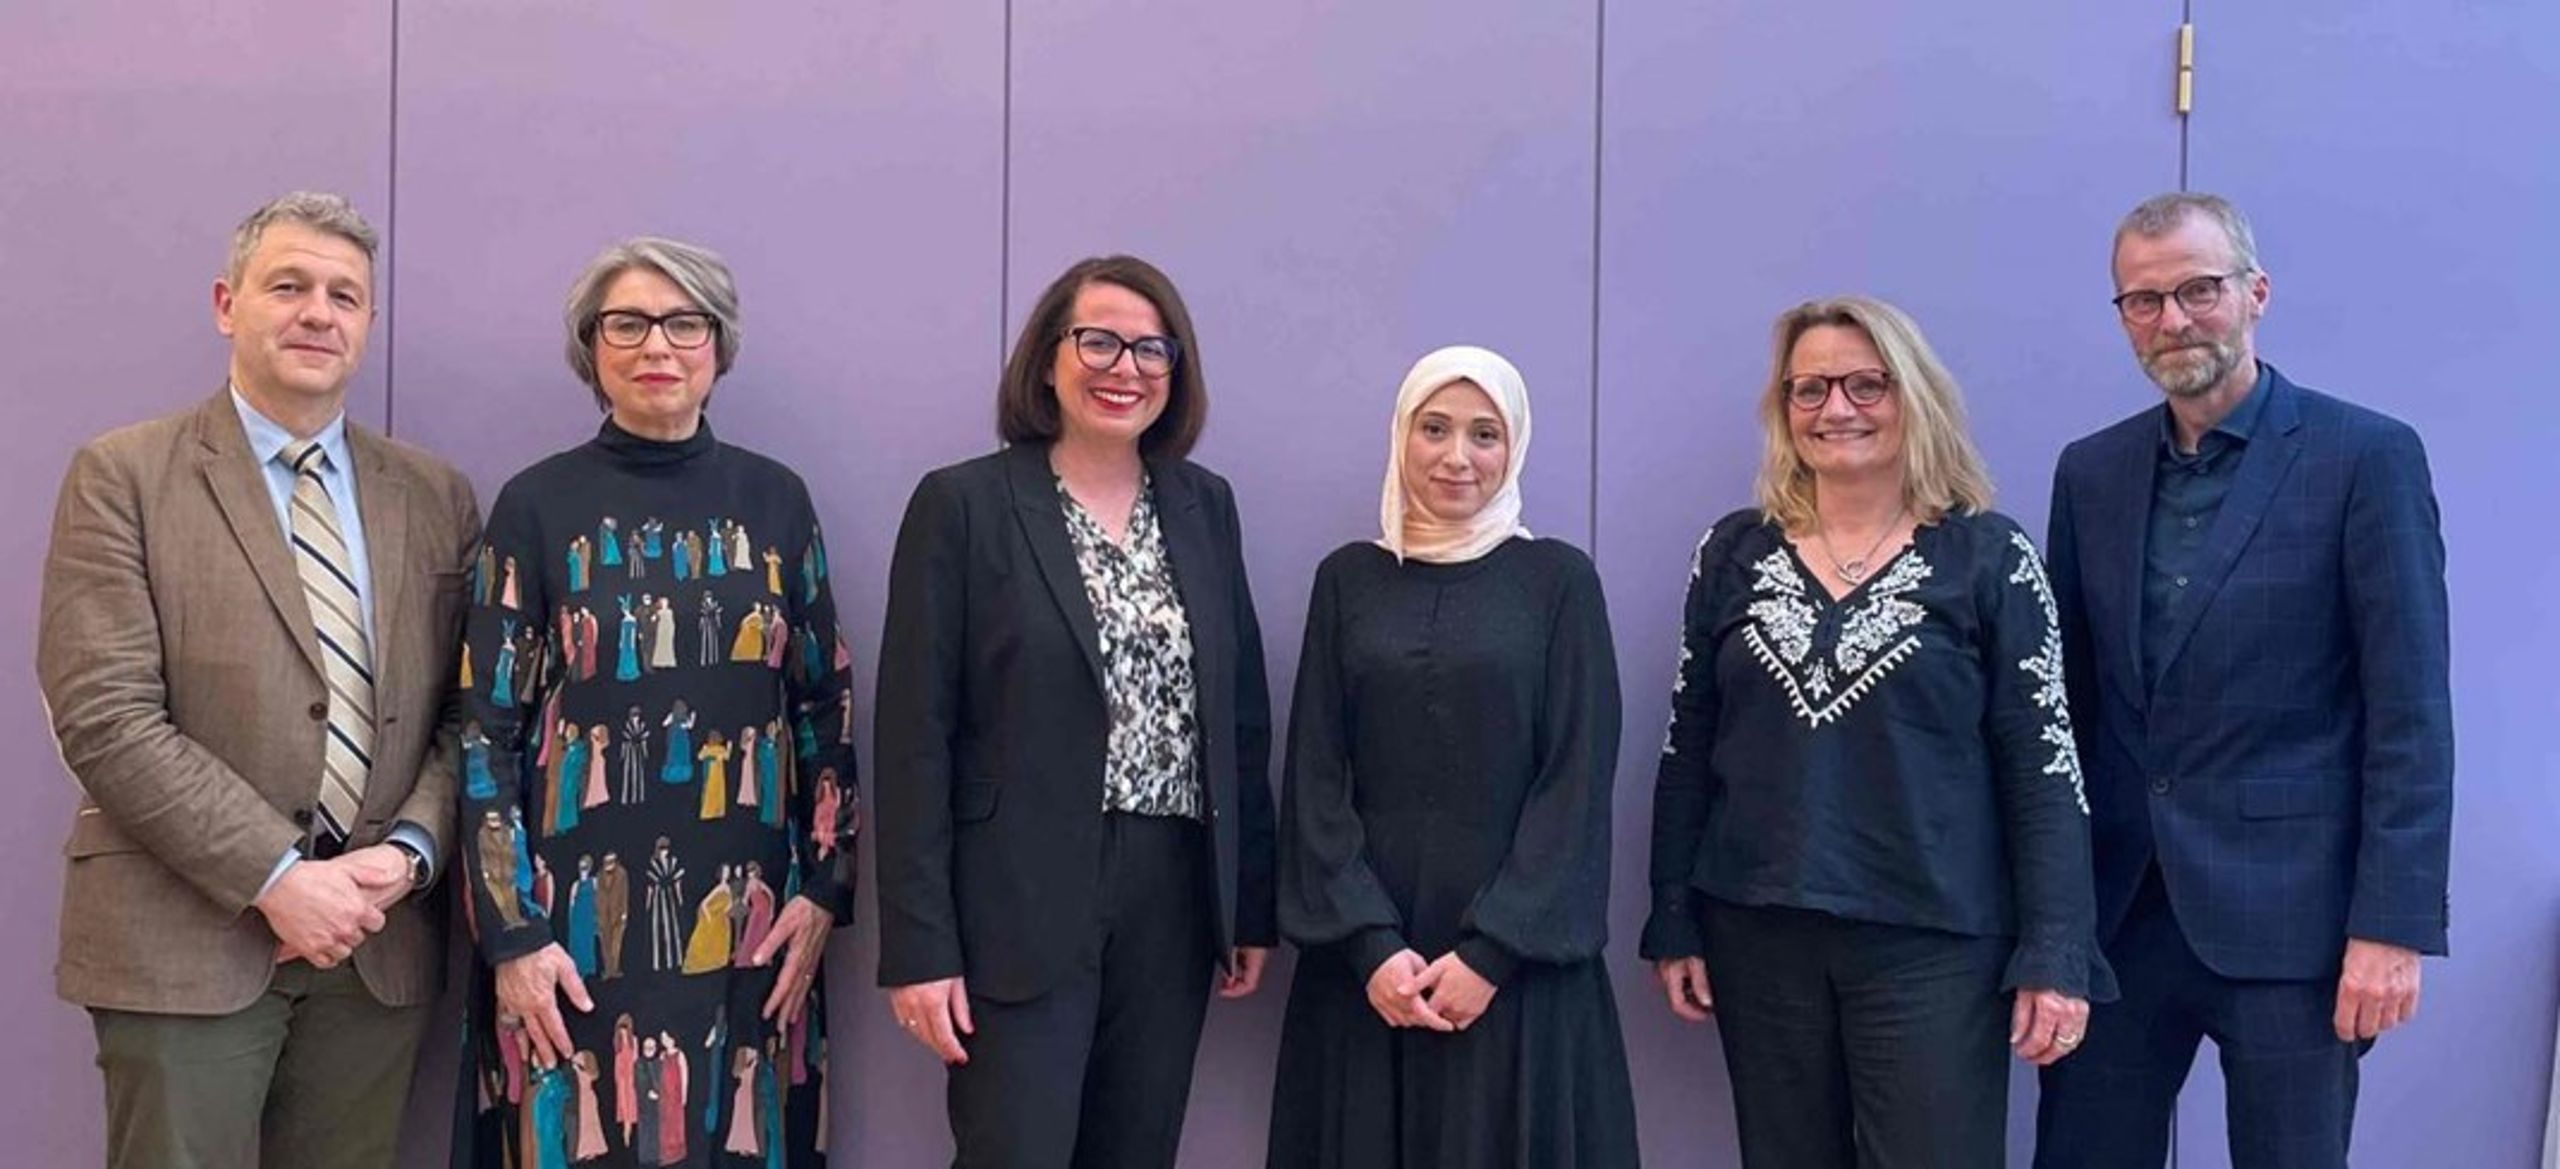 Fatima AlZahra’a Alatraktchi modtog 2. maj prisen 'For kvinder i videnskab' hos Videnskabernes Selskab, hvor blandt andet&nbsp;uddannelses- og forskningsminister Christina Egelund, repræsentanter fra L’Oréal,&nbsp;UNESCO&nbsp;og Det Kongelige Danske Videnskabernes Selskab deltog.